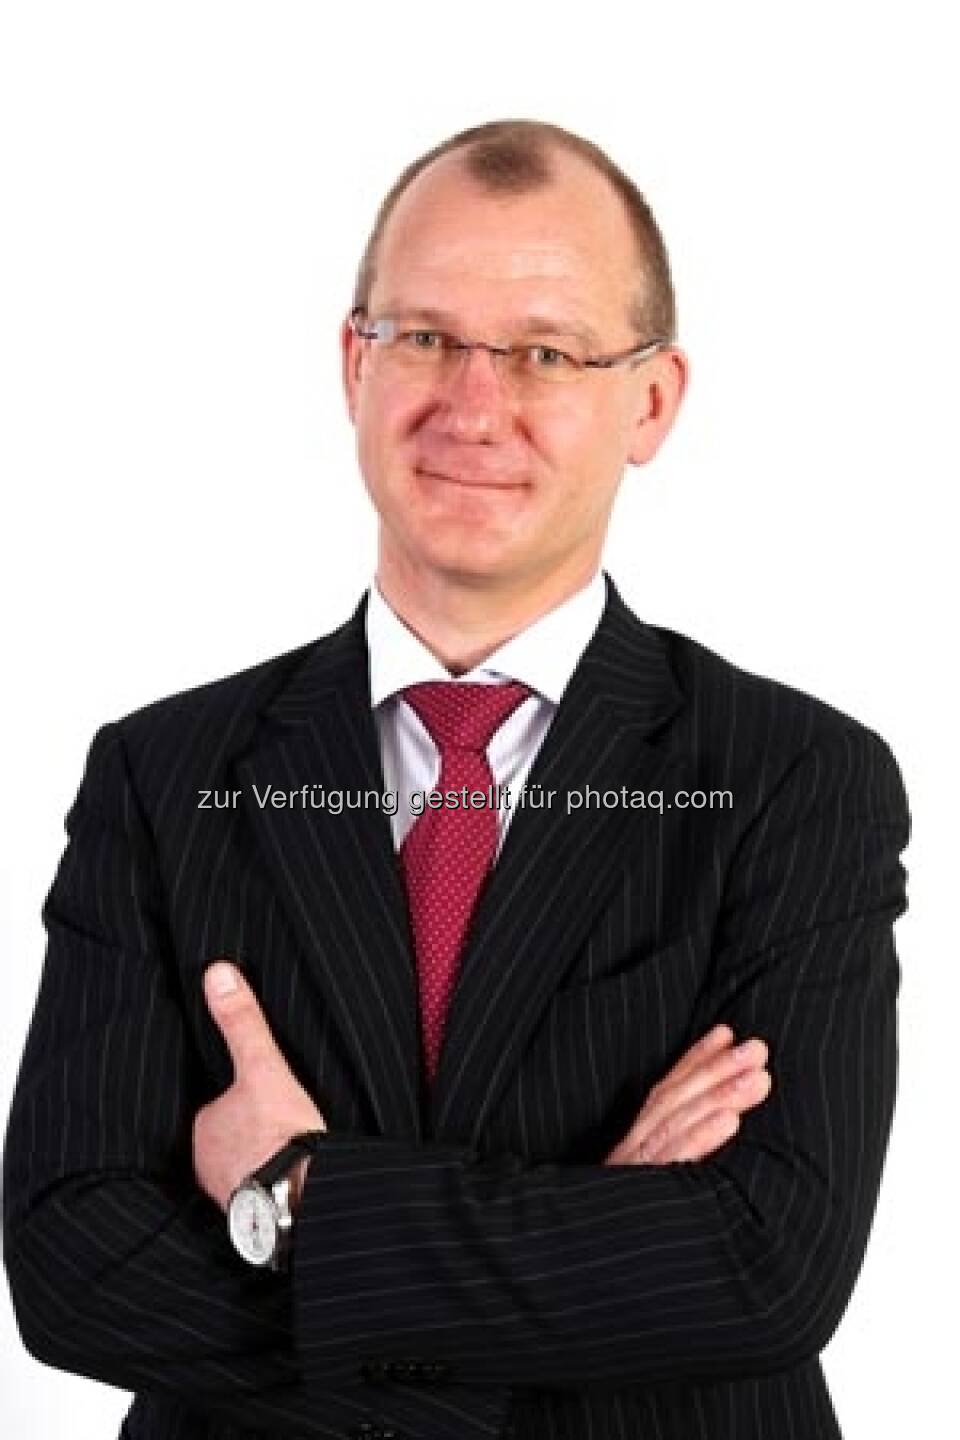 Igor Strehl verstärkt ab 29. April 2013 das Vorstandsteam der Sberbank Europe AG und übernimmt die Verantwortung für den Bereich Corporate Business & Investment Banking. Zuletzt war er Vorstandsvorsitzender der VTB Bank (Austria) in Wien (c) Aussendung